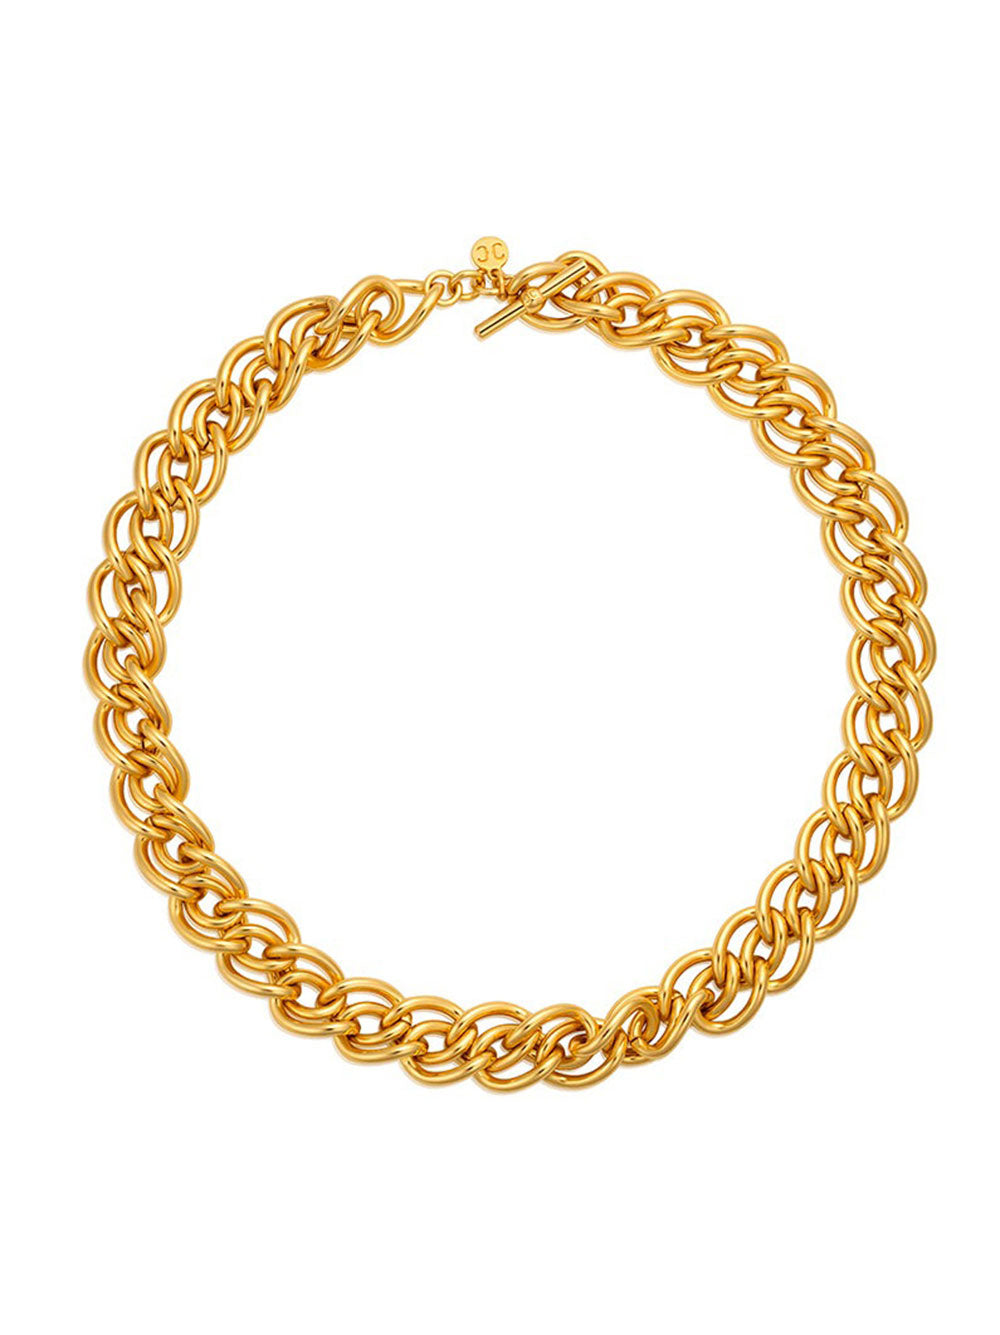 Christina Caruso Braided Chain Necklace